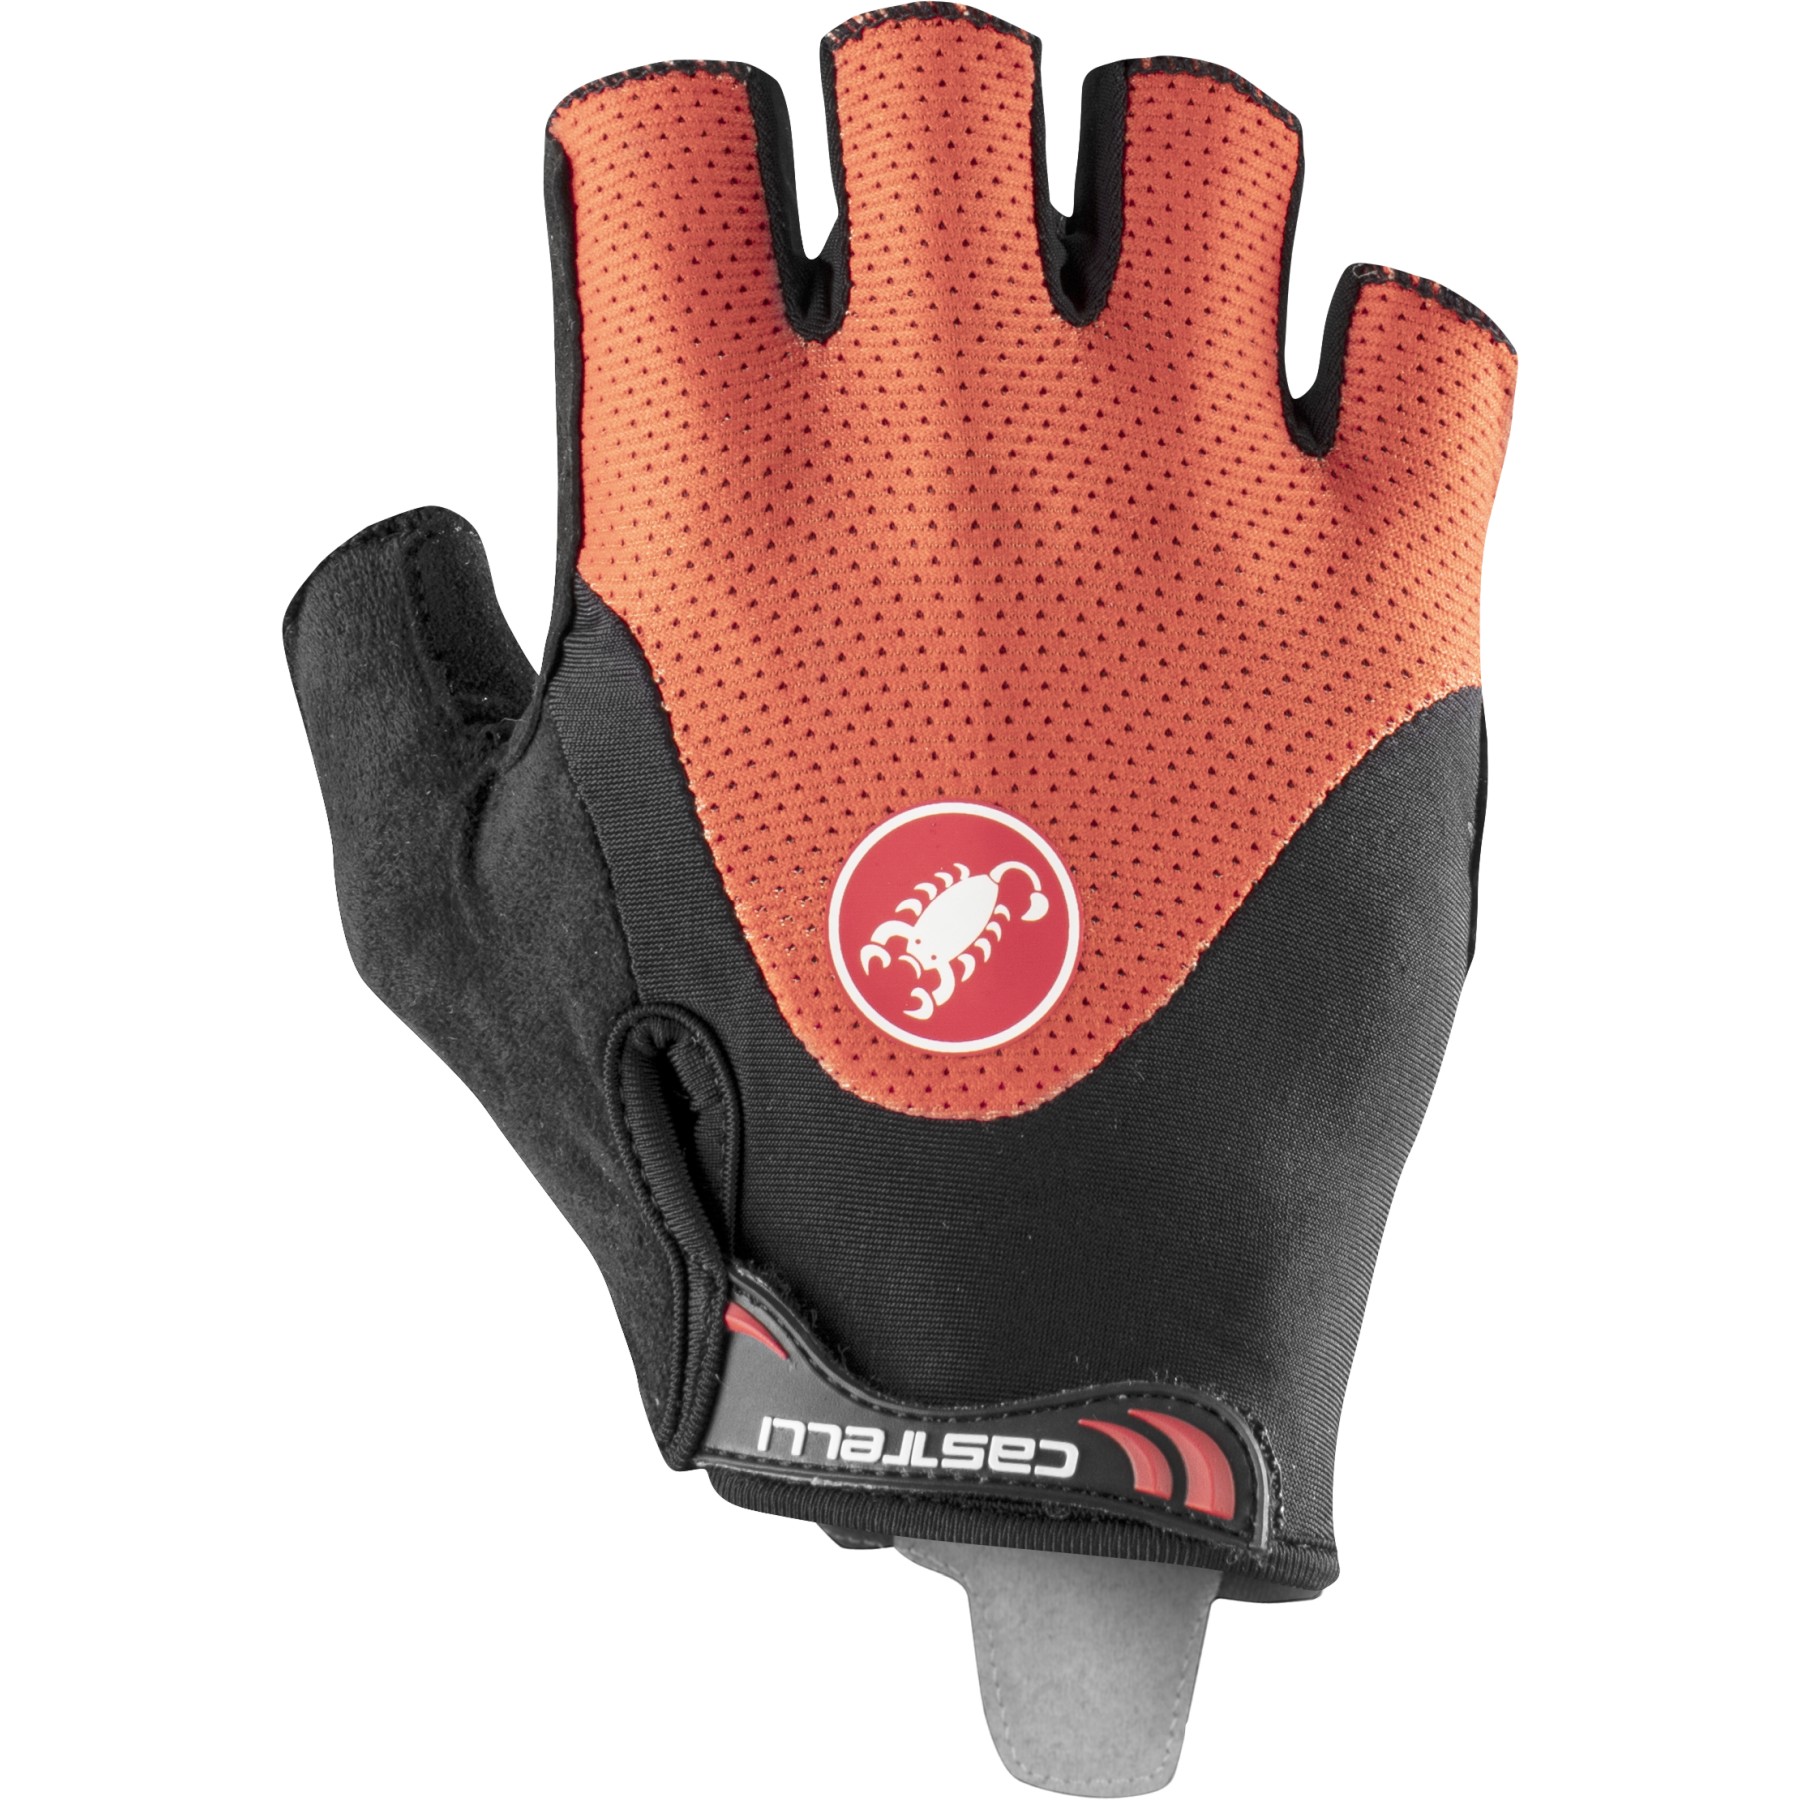 Produktbild von Castelli Arenberg Gel 2 Kurzfinger-Handschuhe - fiery red/black 656